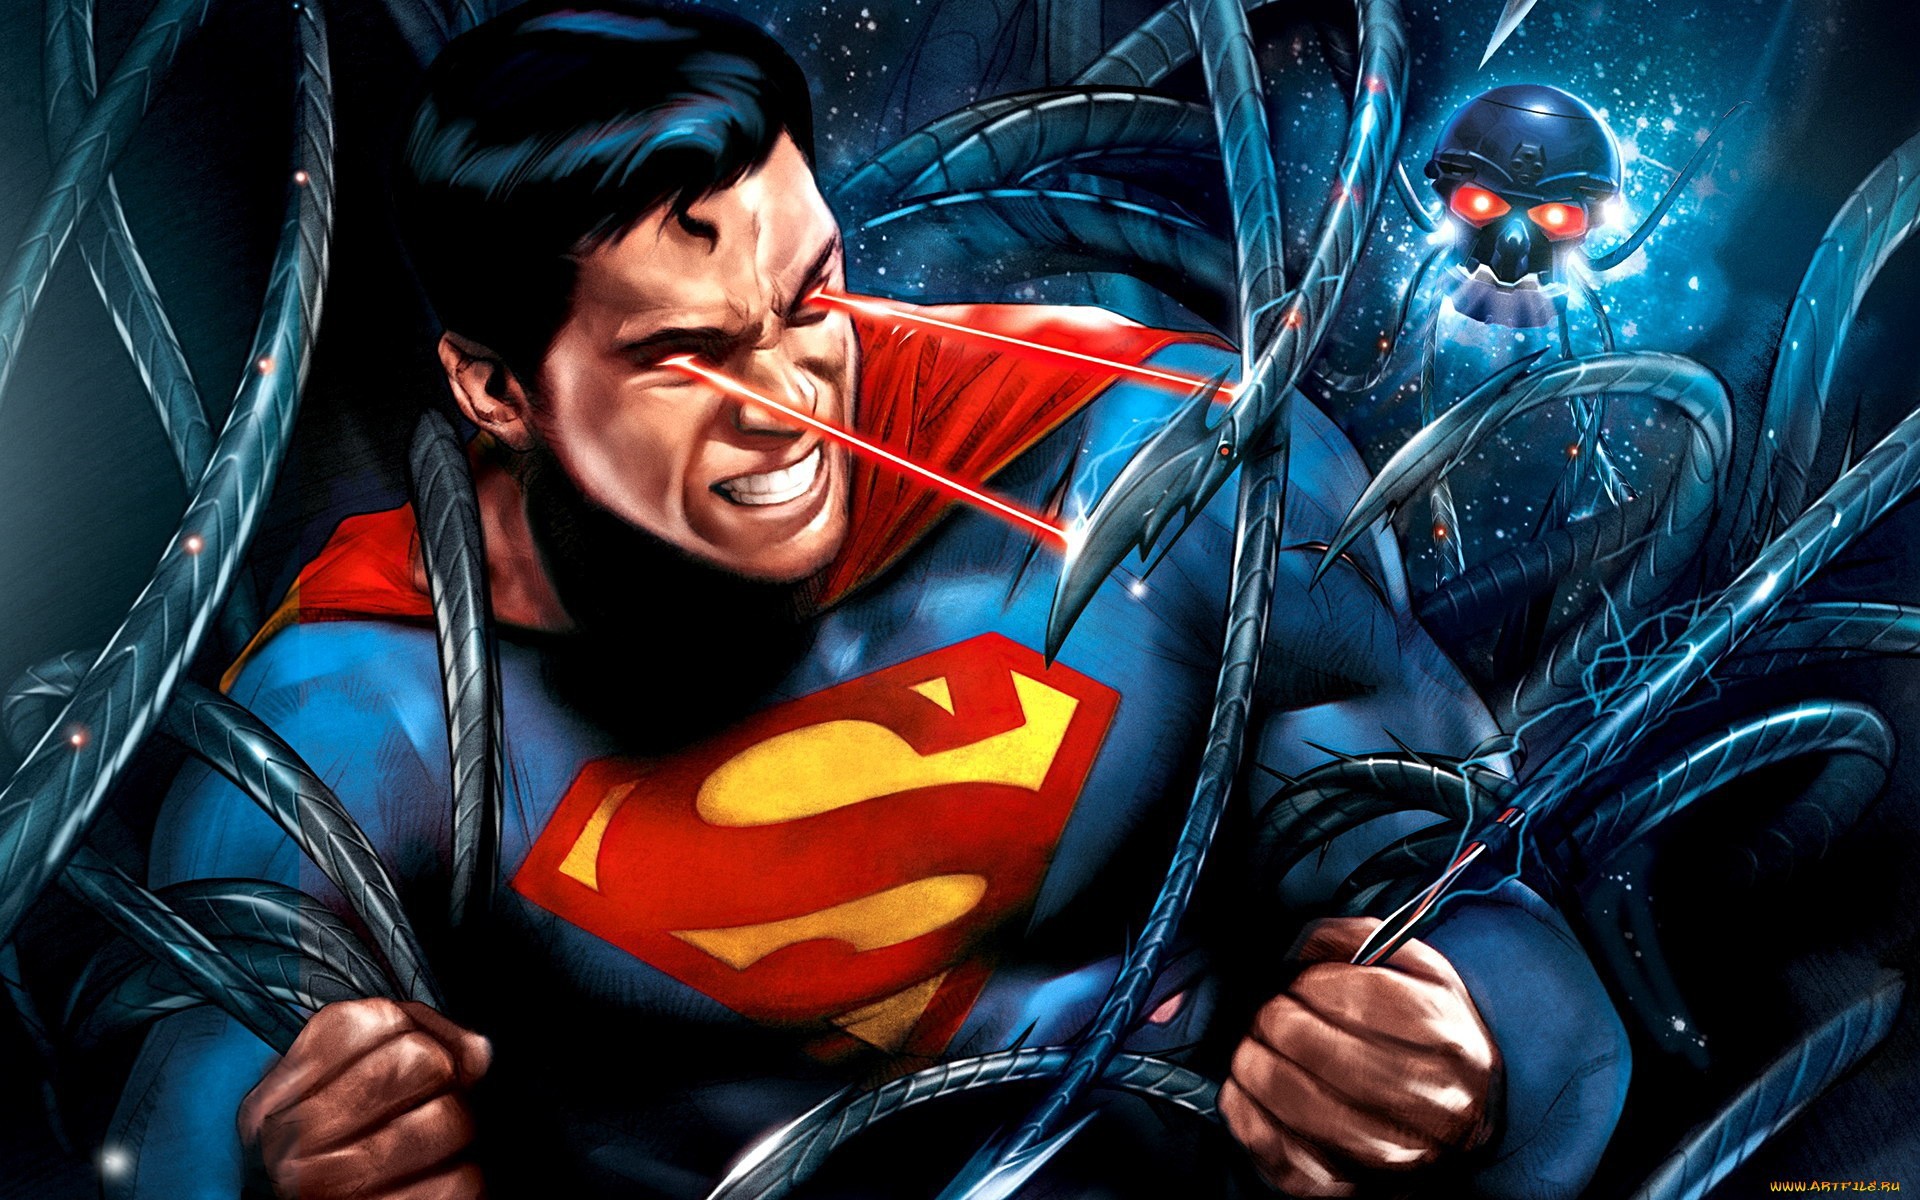 Die besten Superman: Unbound-Hintergründe für den Telefonbildschirm